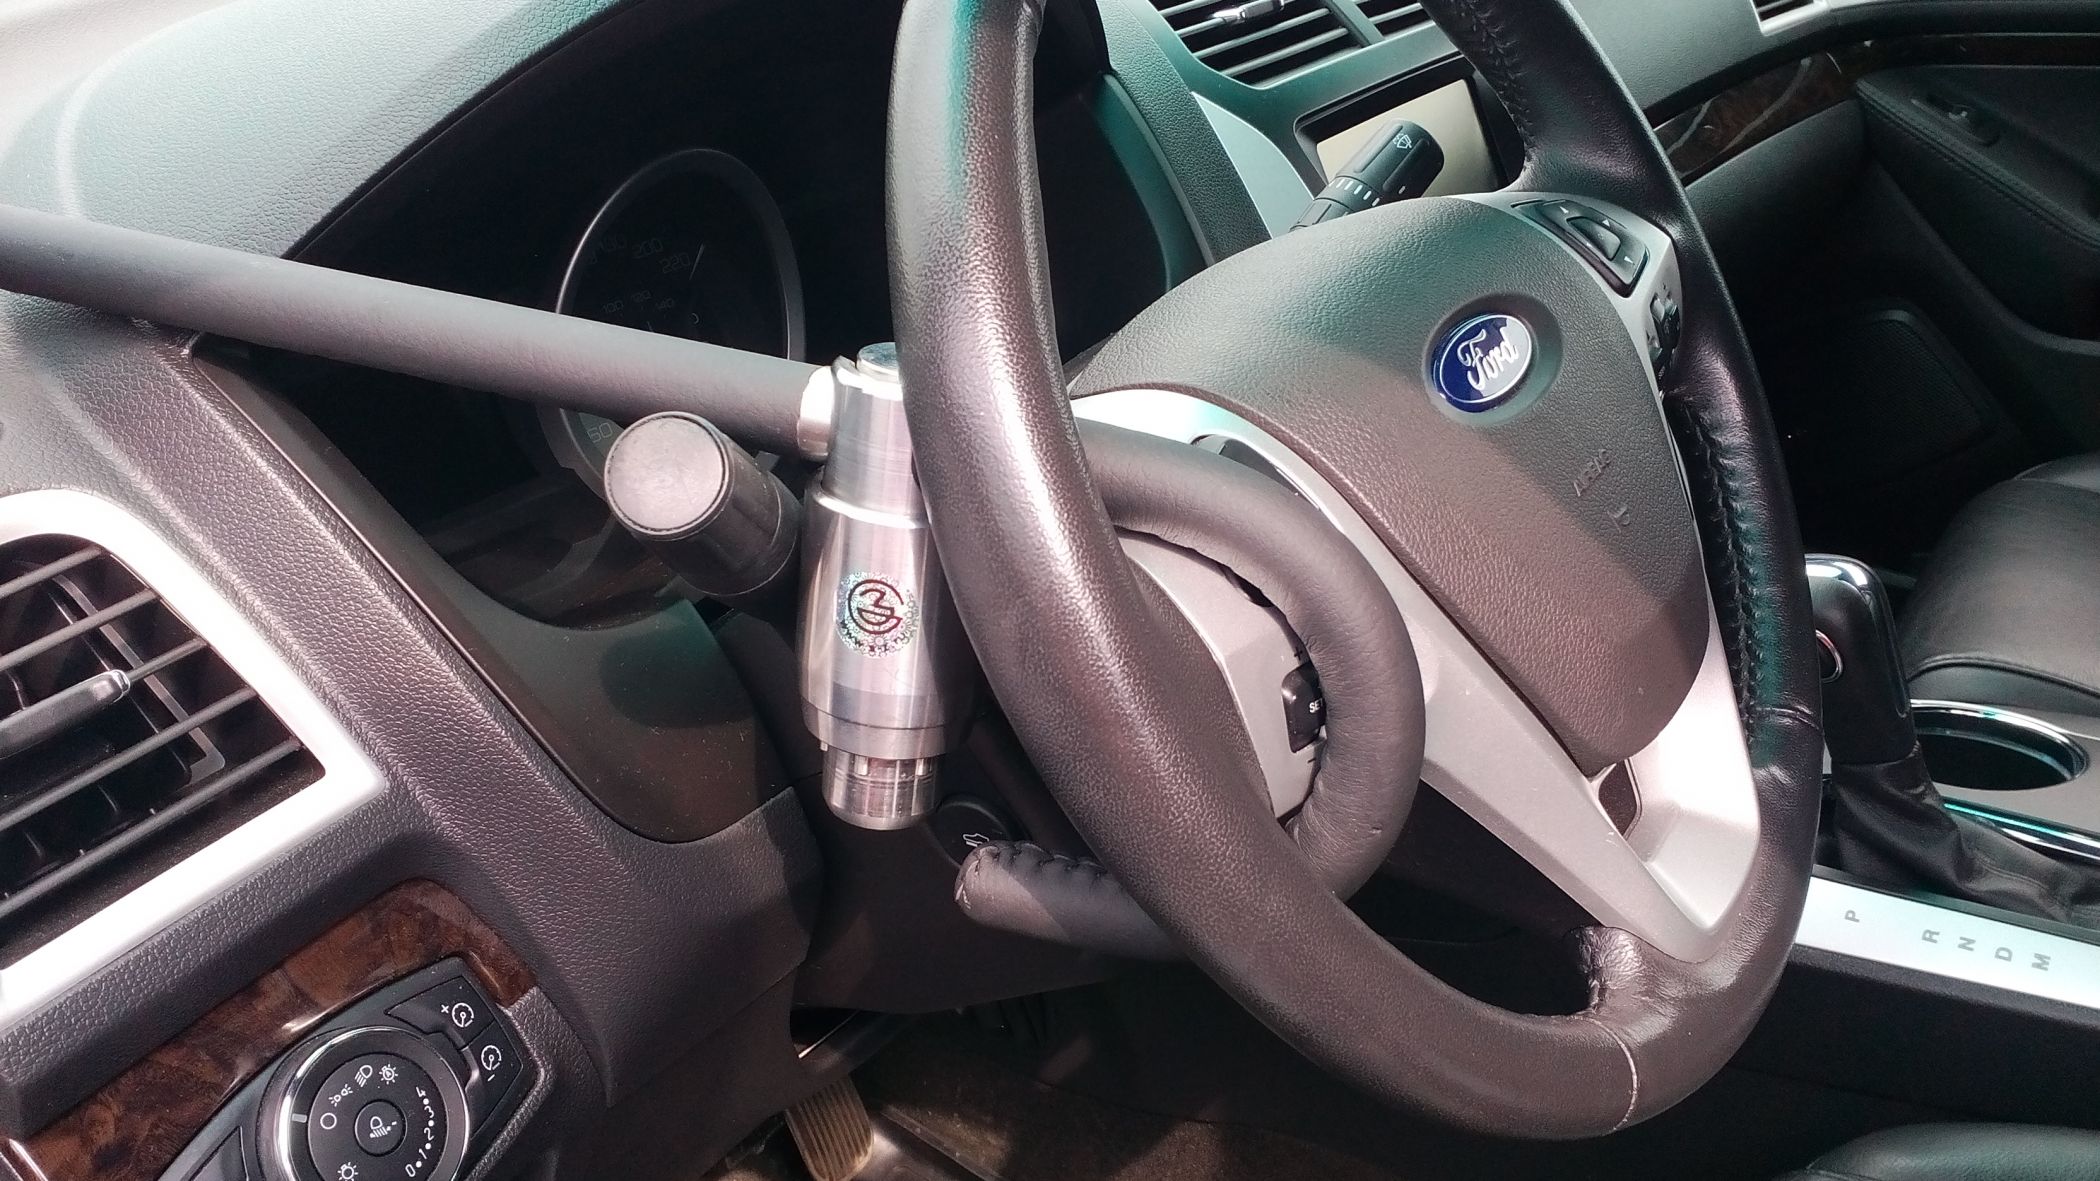 Блокиратор руля Питон установленный на автомобиле Ford Explorer 2015-